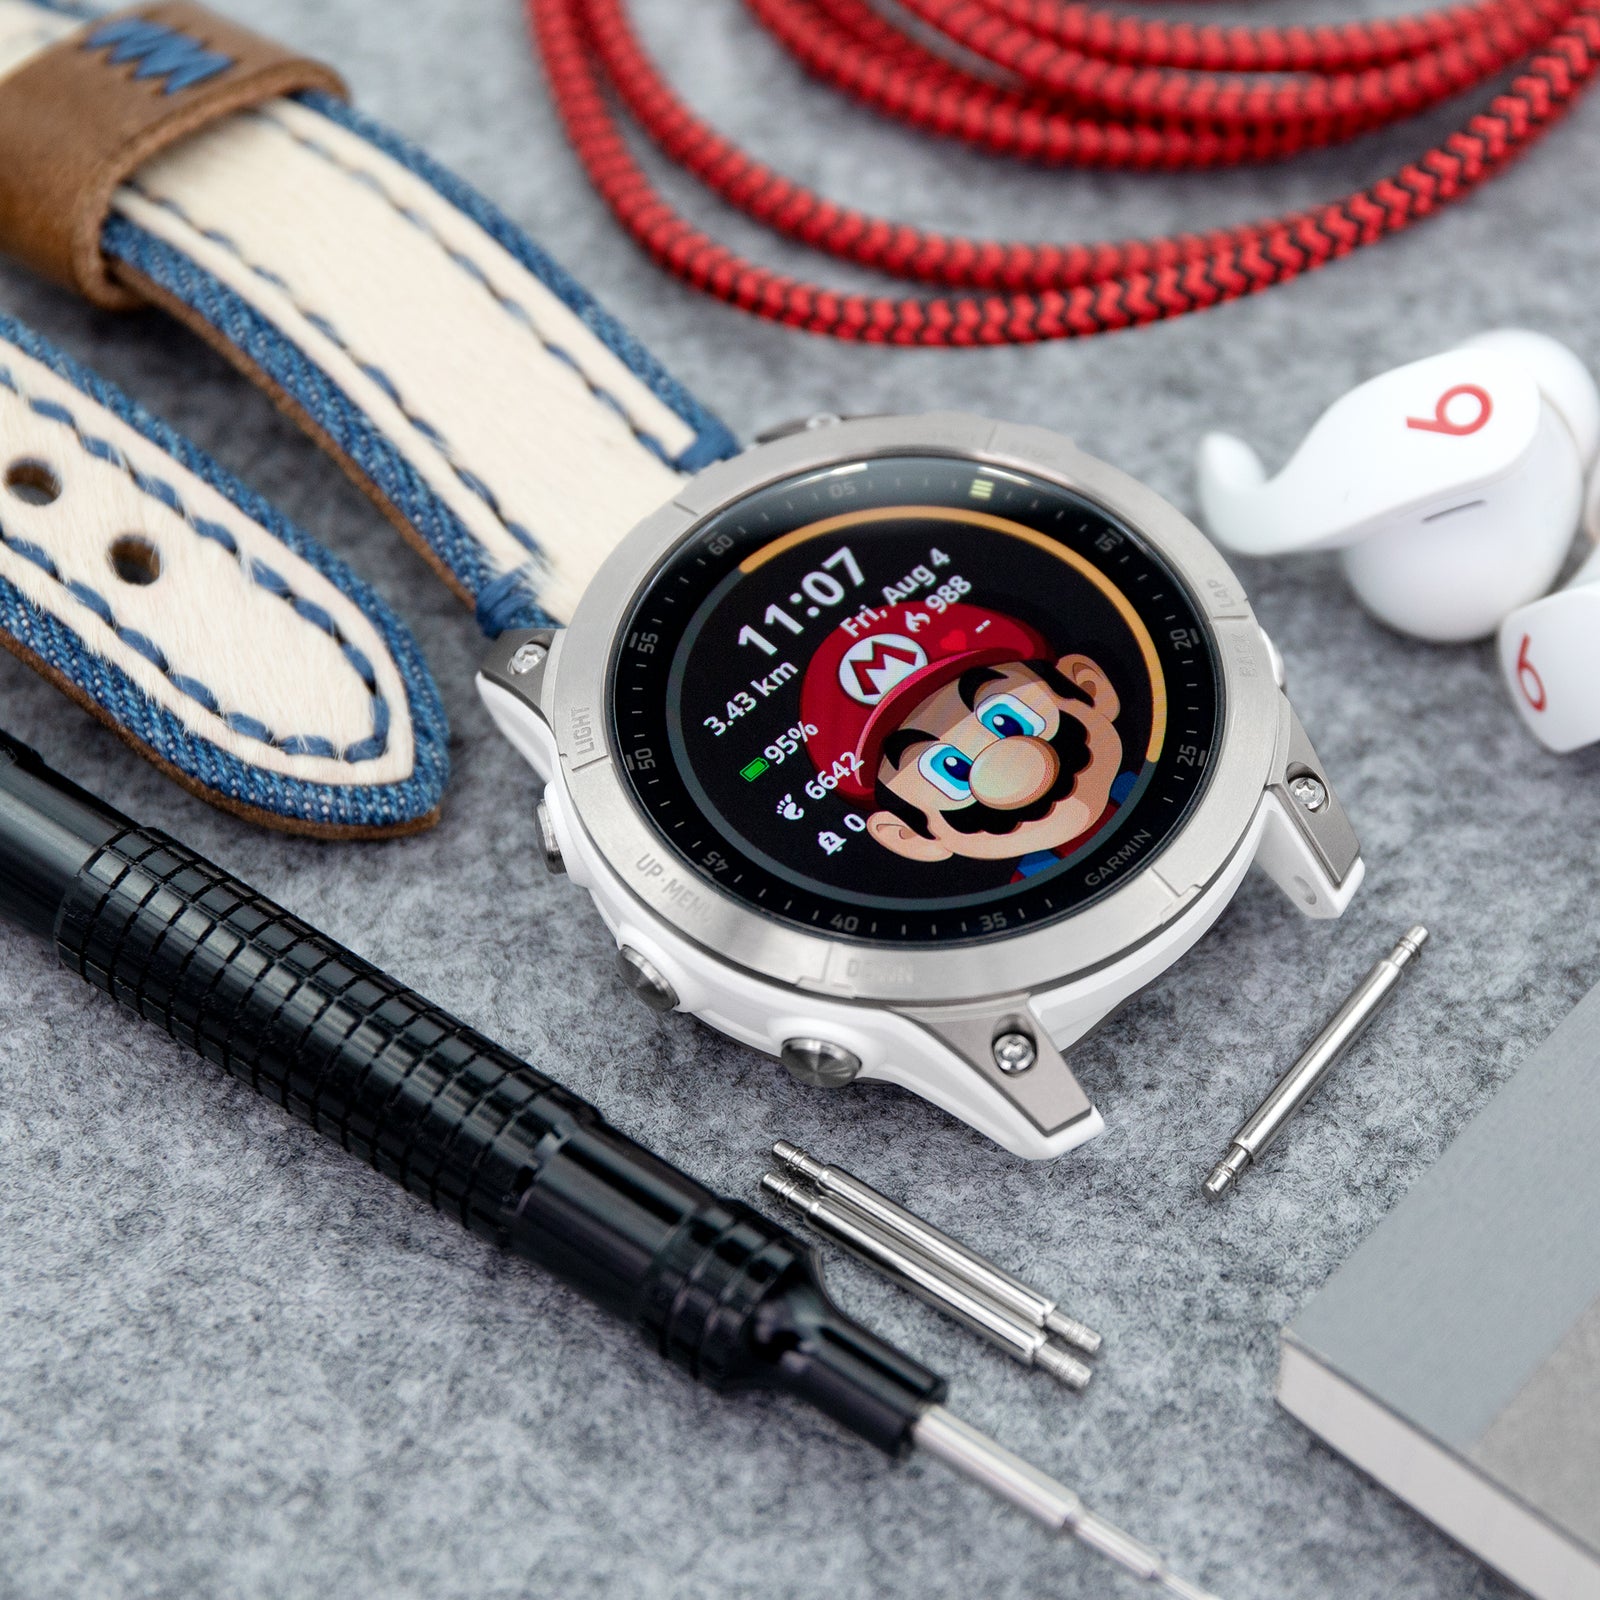 Garmin presenta sus nuevos smartwatch Fenix 6-Series, Gadgets